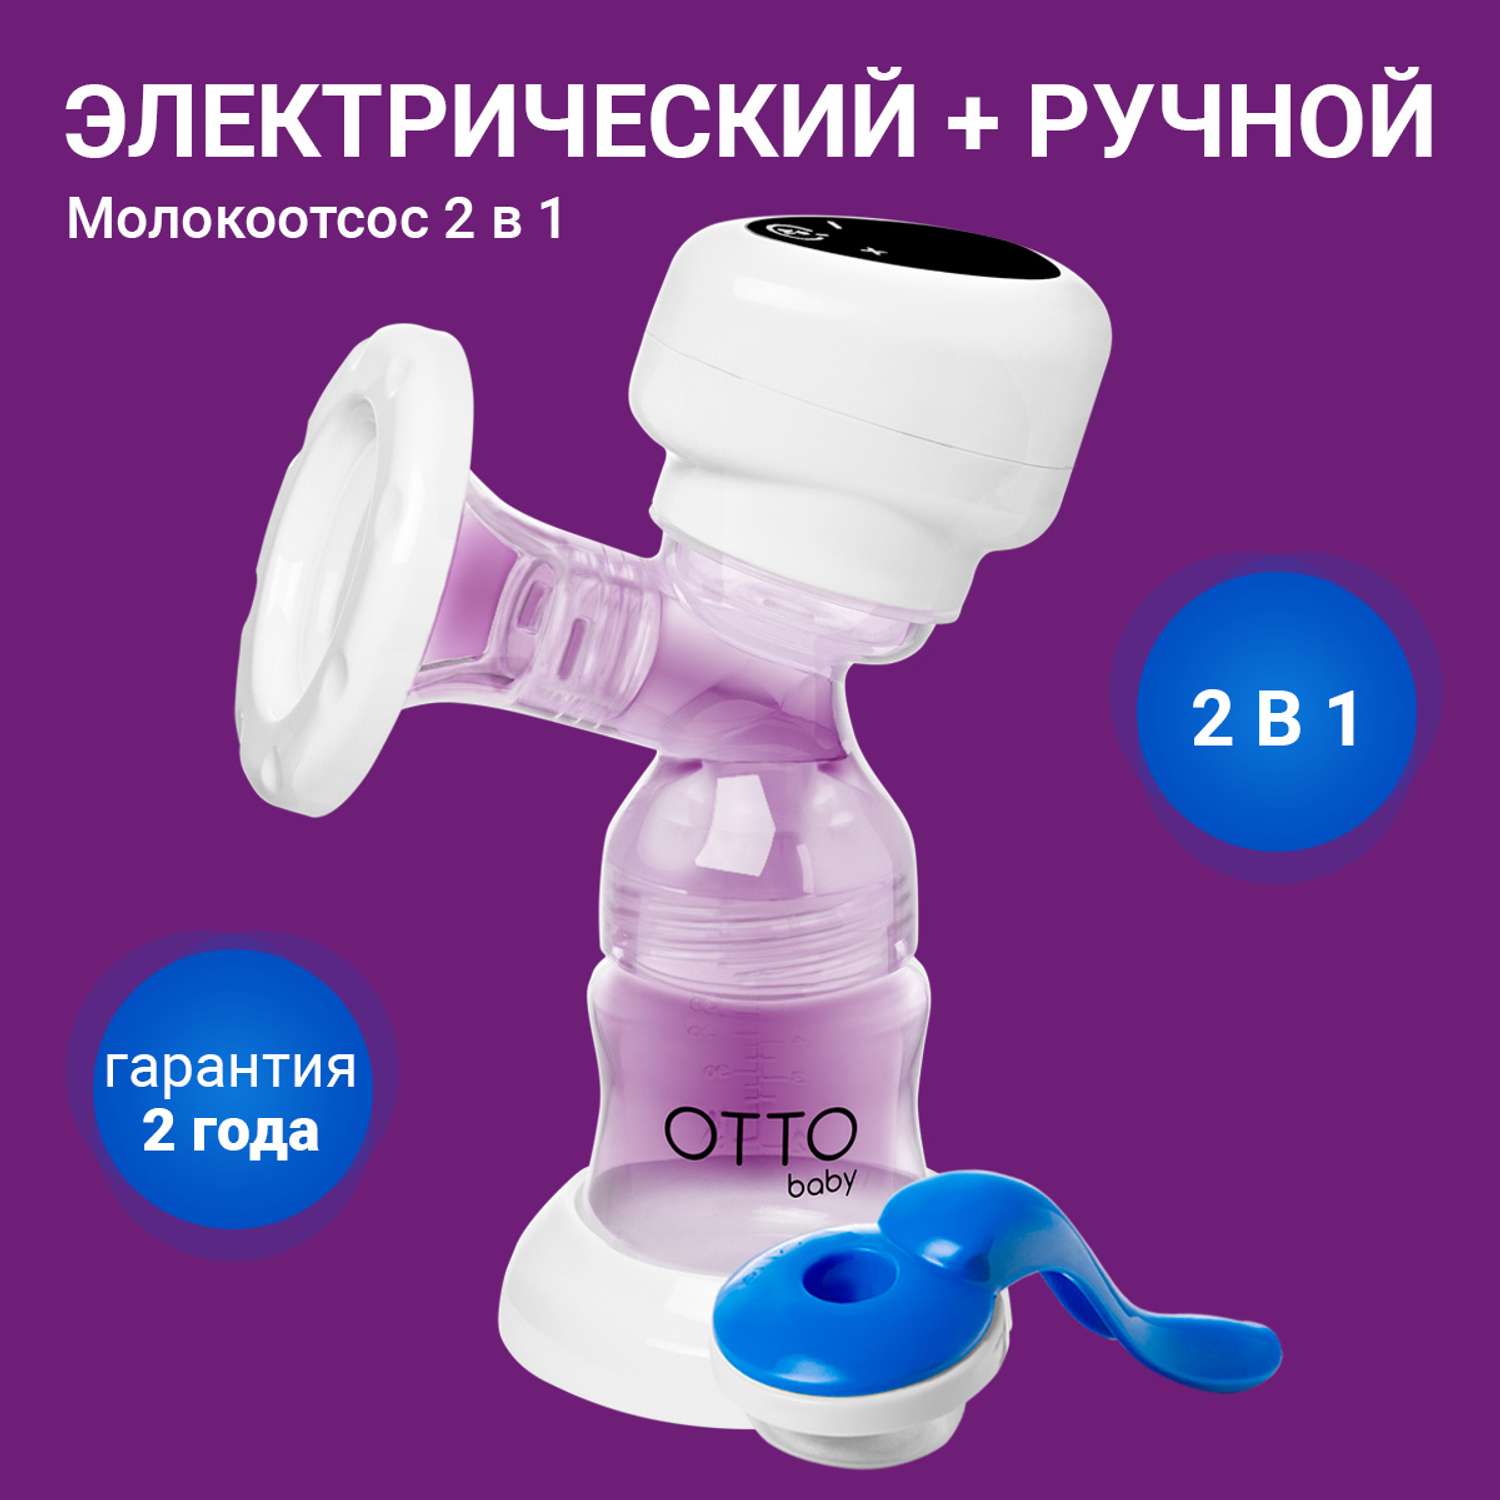 Молокоотсос Otto Baby электронный и ручной 2в1 + бутылочка с соской + 10 пакетов для молока OTB-5212 - фото 1